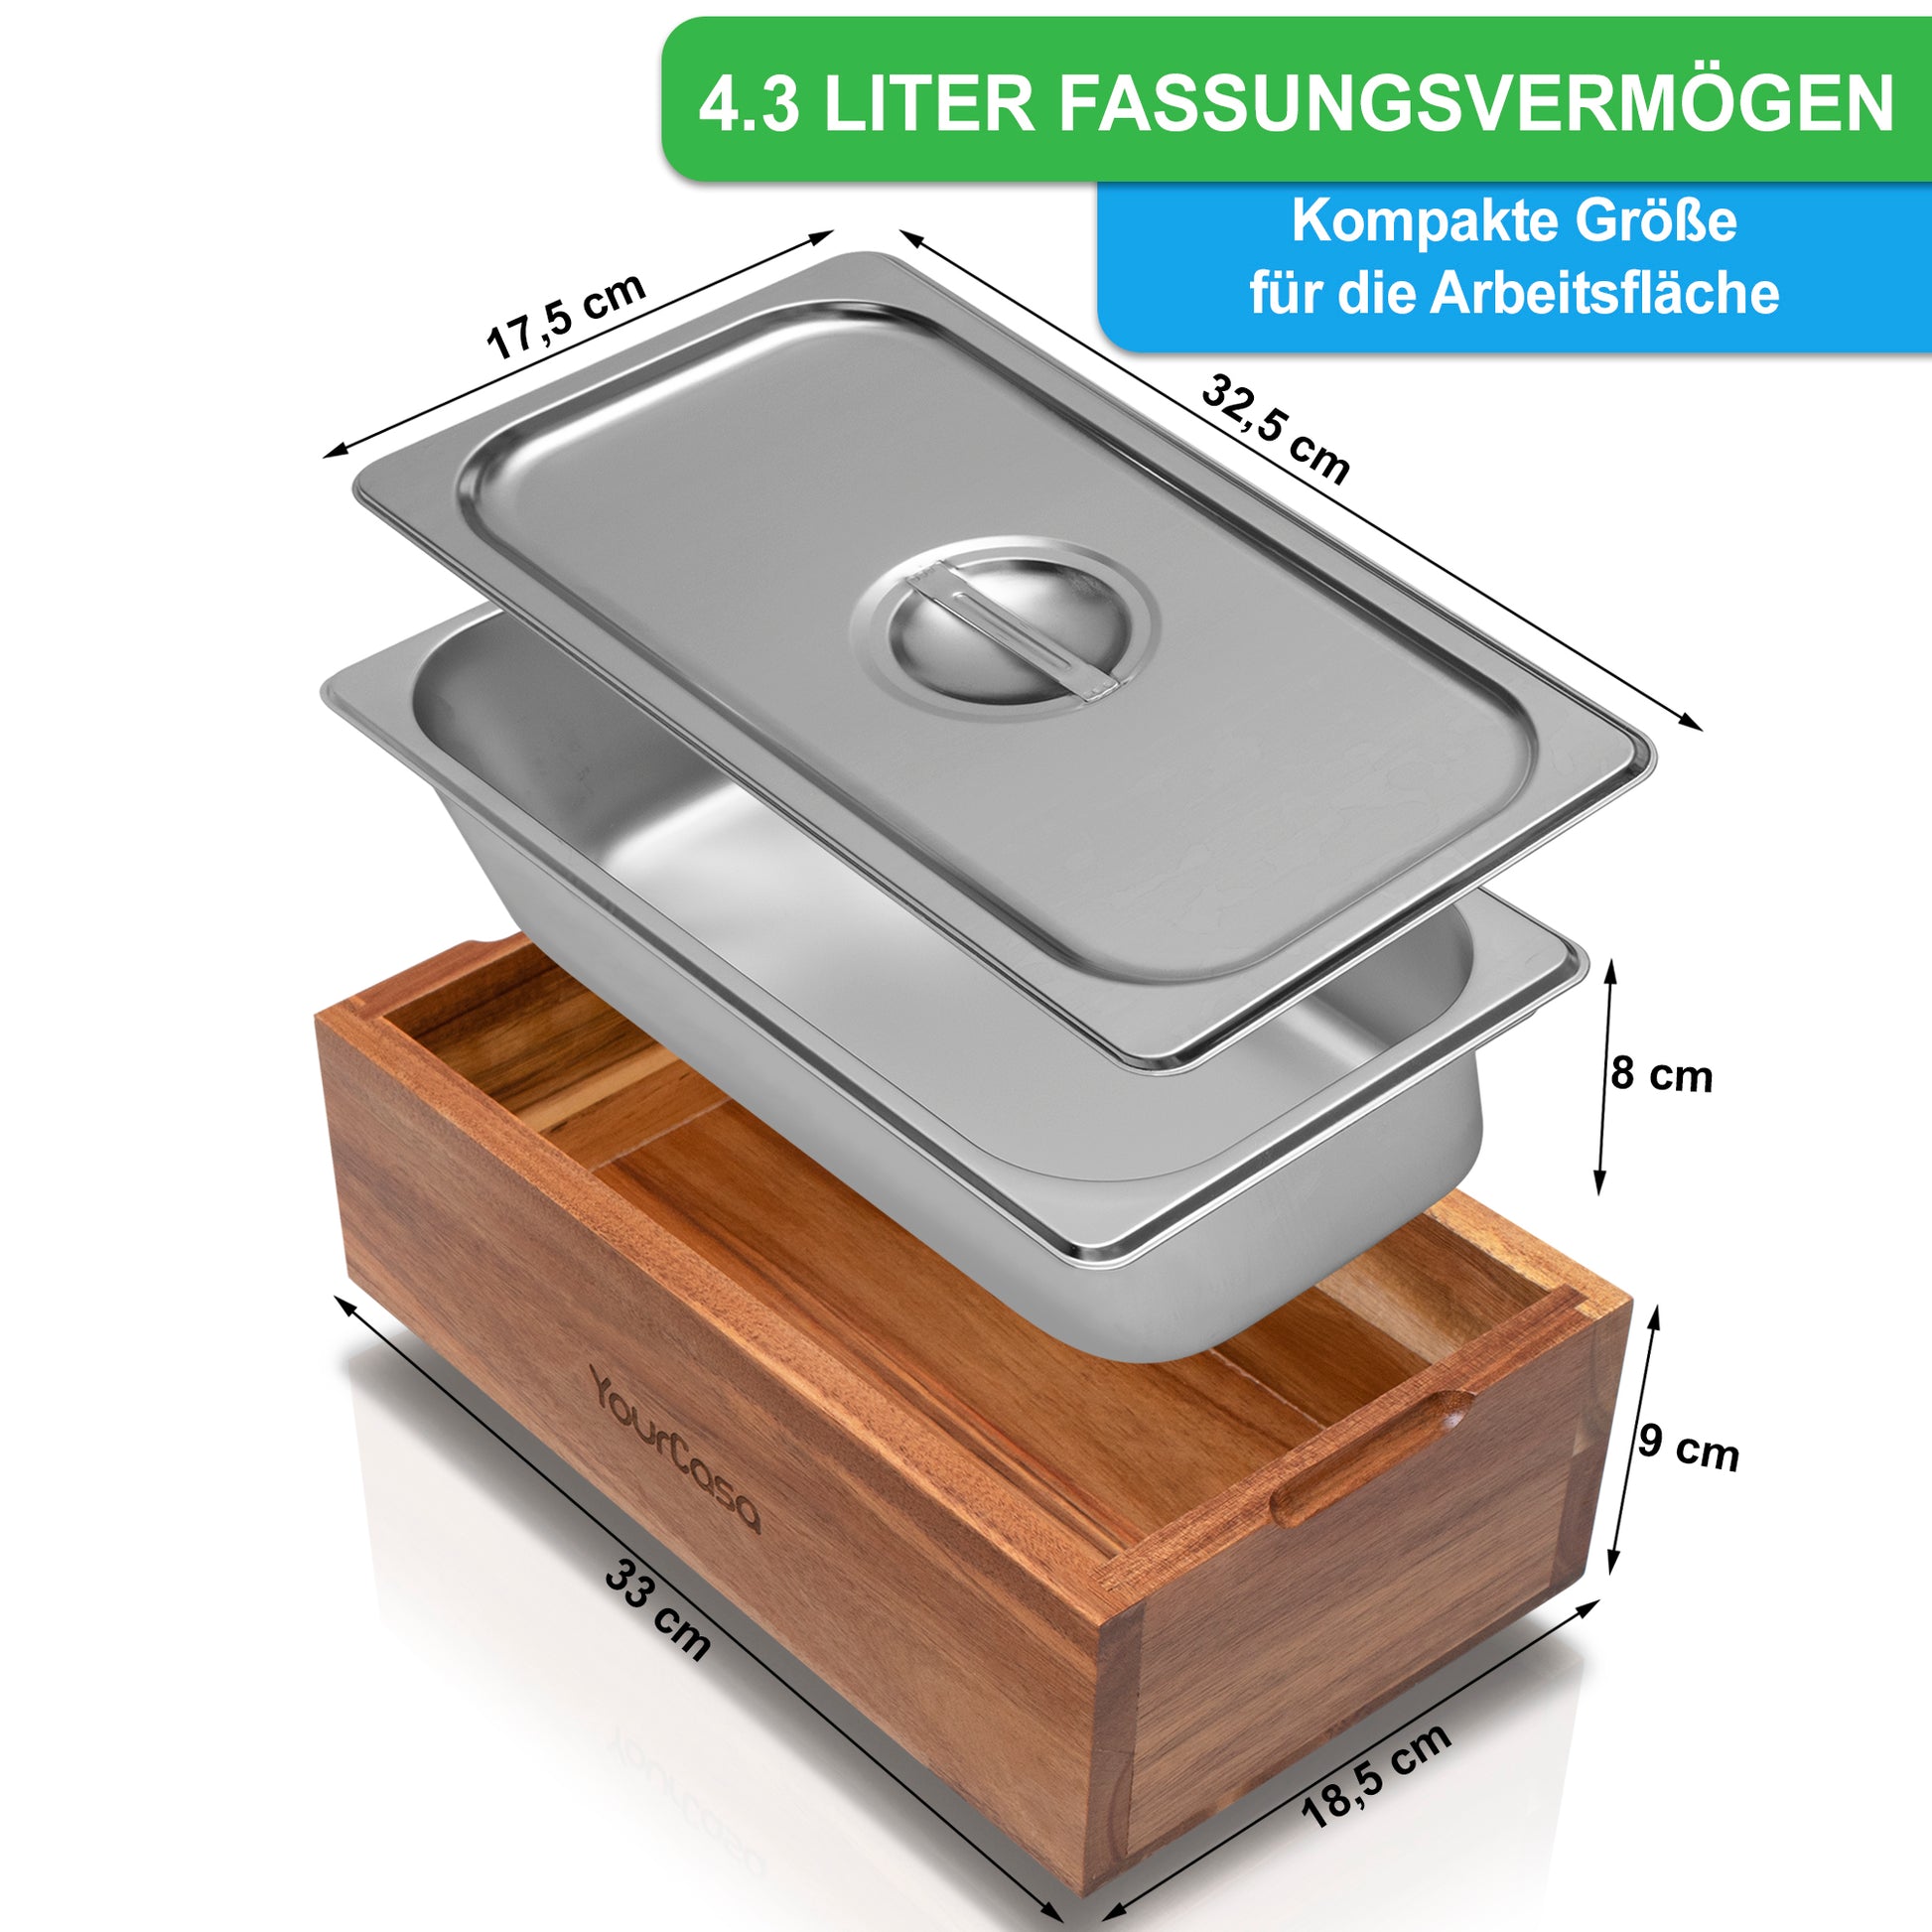 Ein YourCasa® Komposteimer - Echtholz - Edelstahl - für alltäglichen Biomüll in der Küche - Spülmaschinenfest - herausnehmbarer Einsatz mit einer Edelstahlschale im Inneren, Spülmaschinentauglich und Komposter.